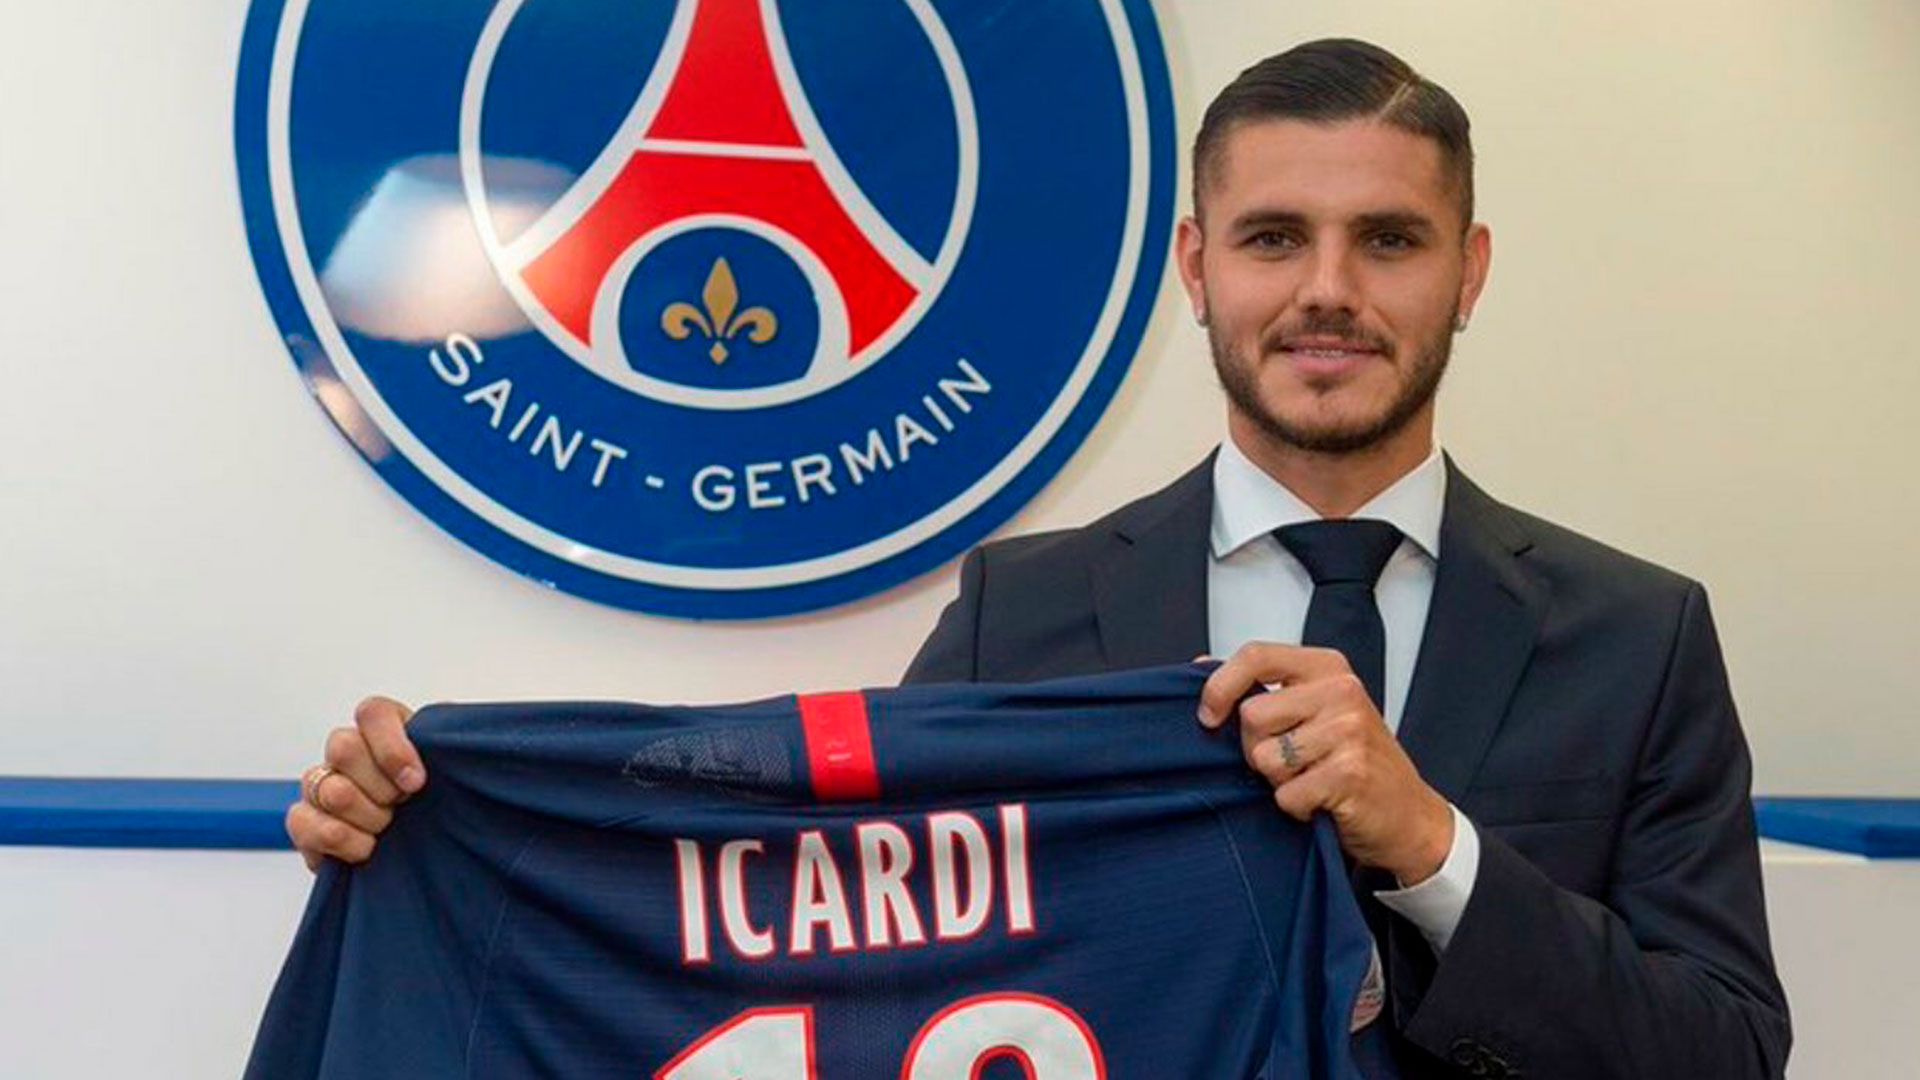 Icardi dejó el fútbol italiano y se mudó al PSG, que pagó más de 50 millones de euros por su pase